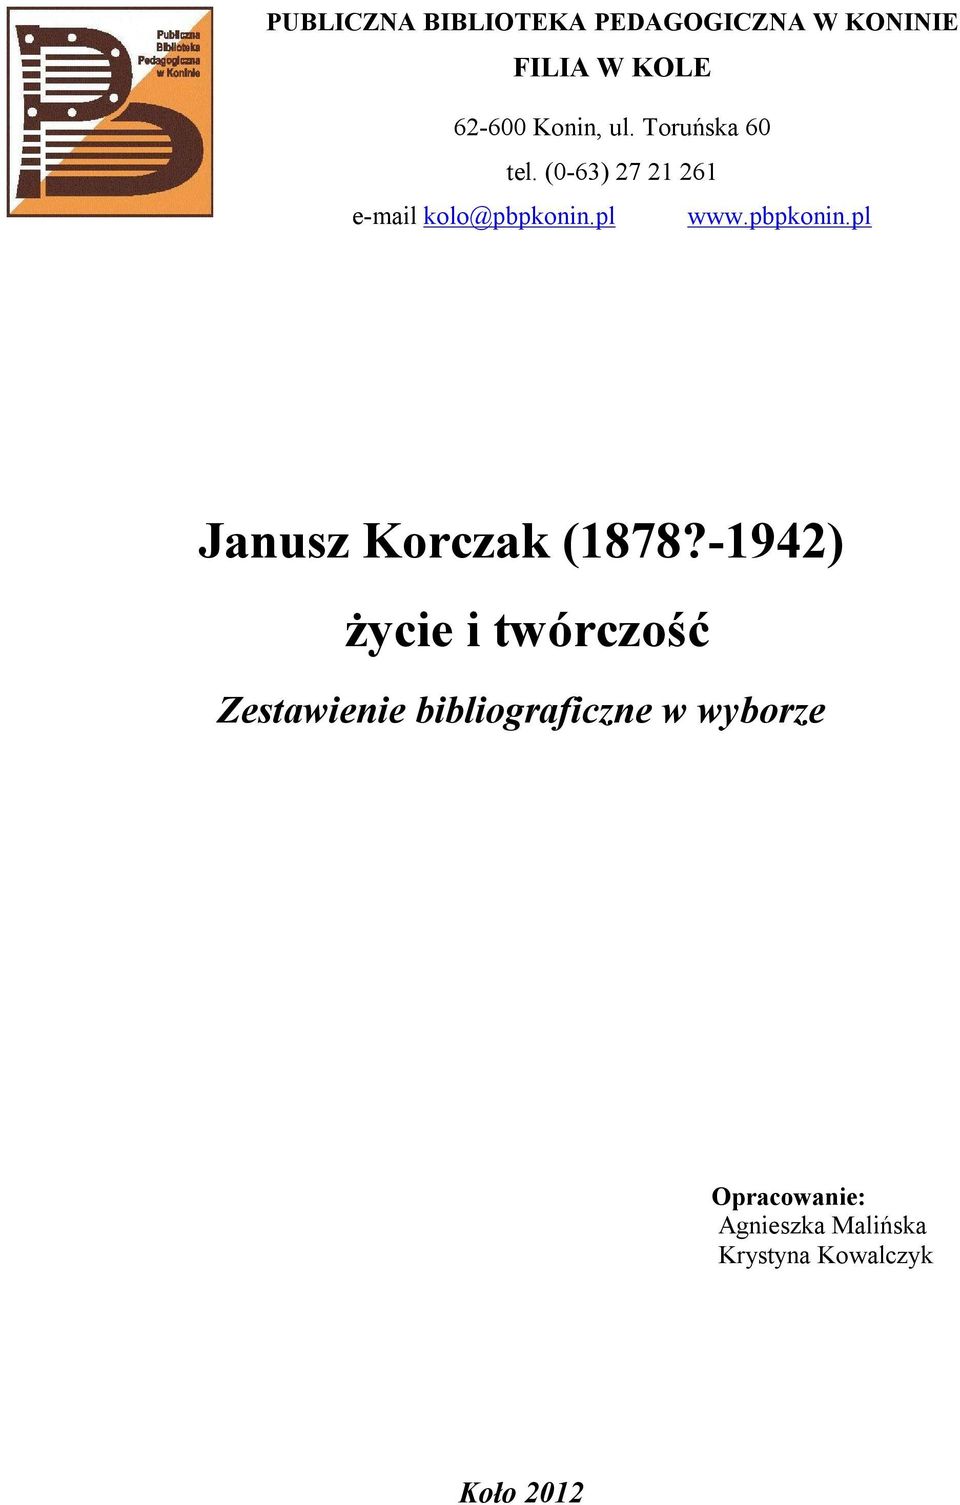 pl www.pbpkonin.pl Janusz Korczak (1878?